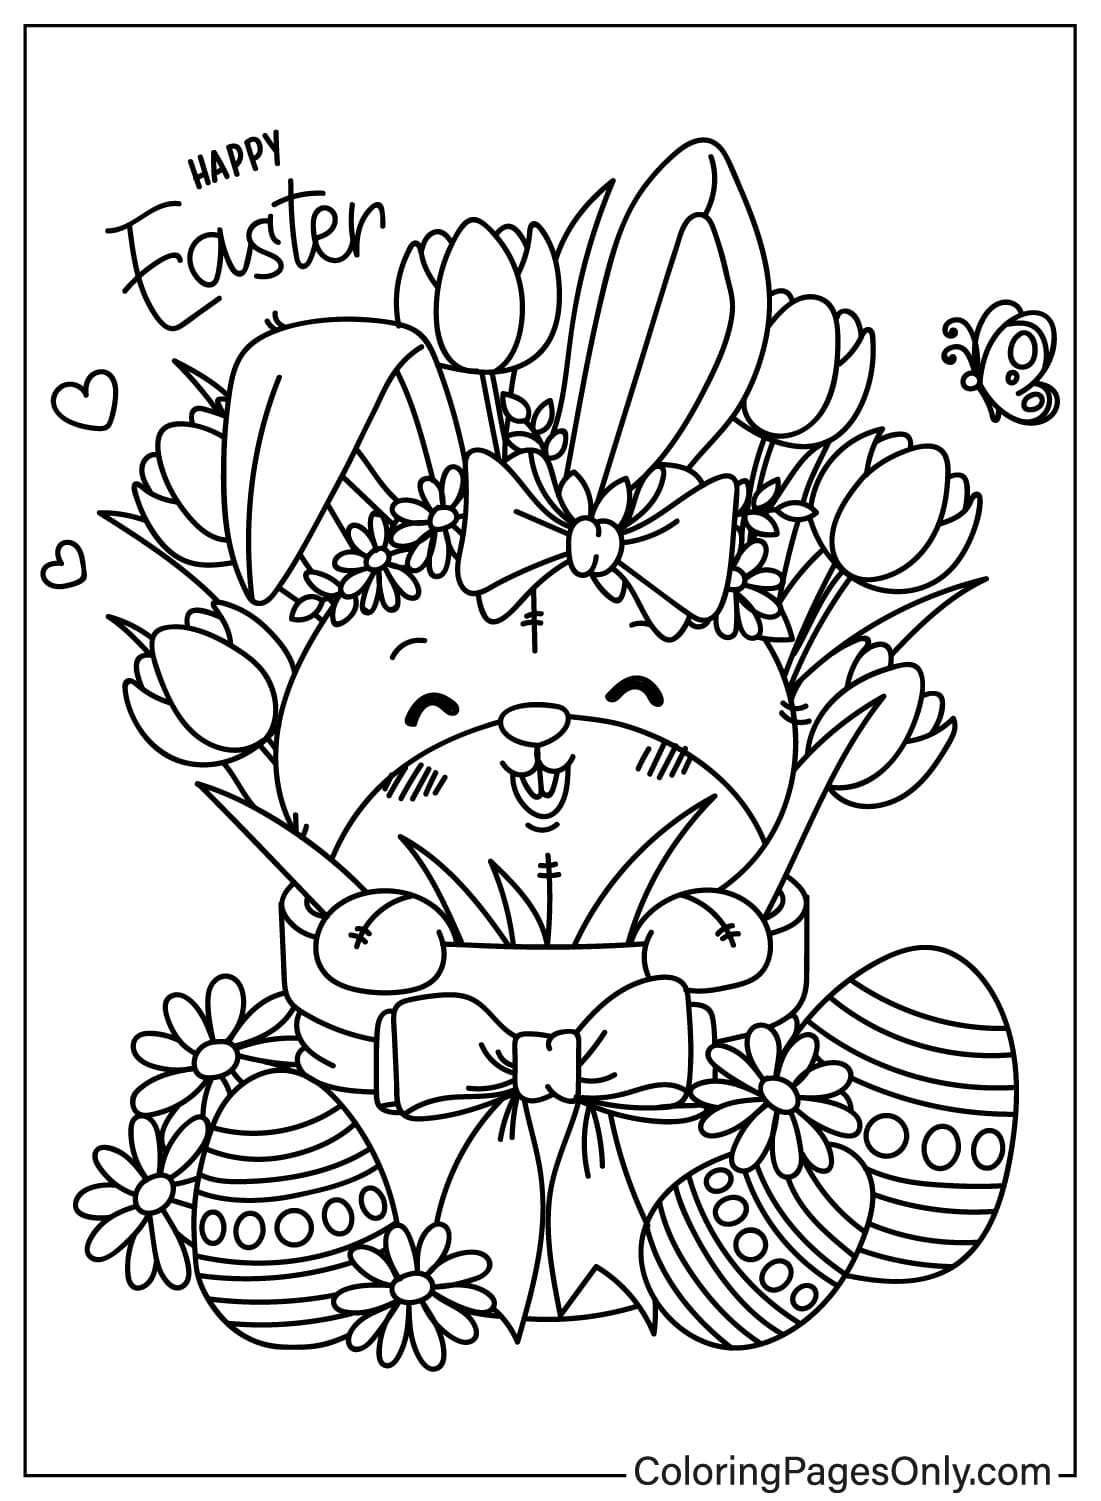 Página para colorir do coelhinho da Páscoa para impressão do Coelhinho da Páscoa